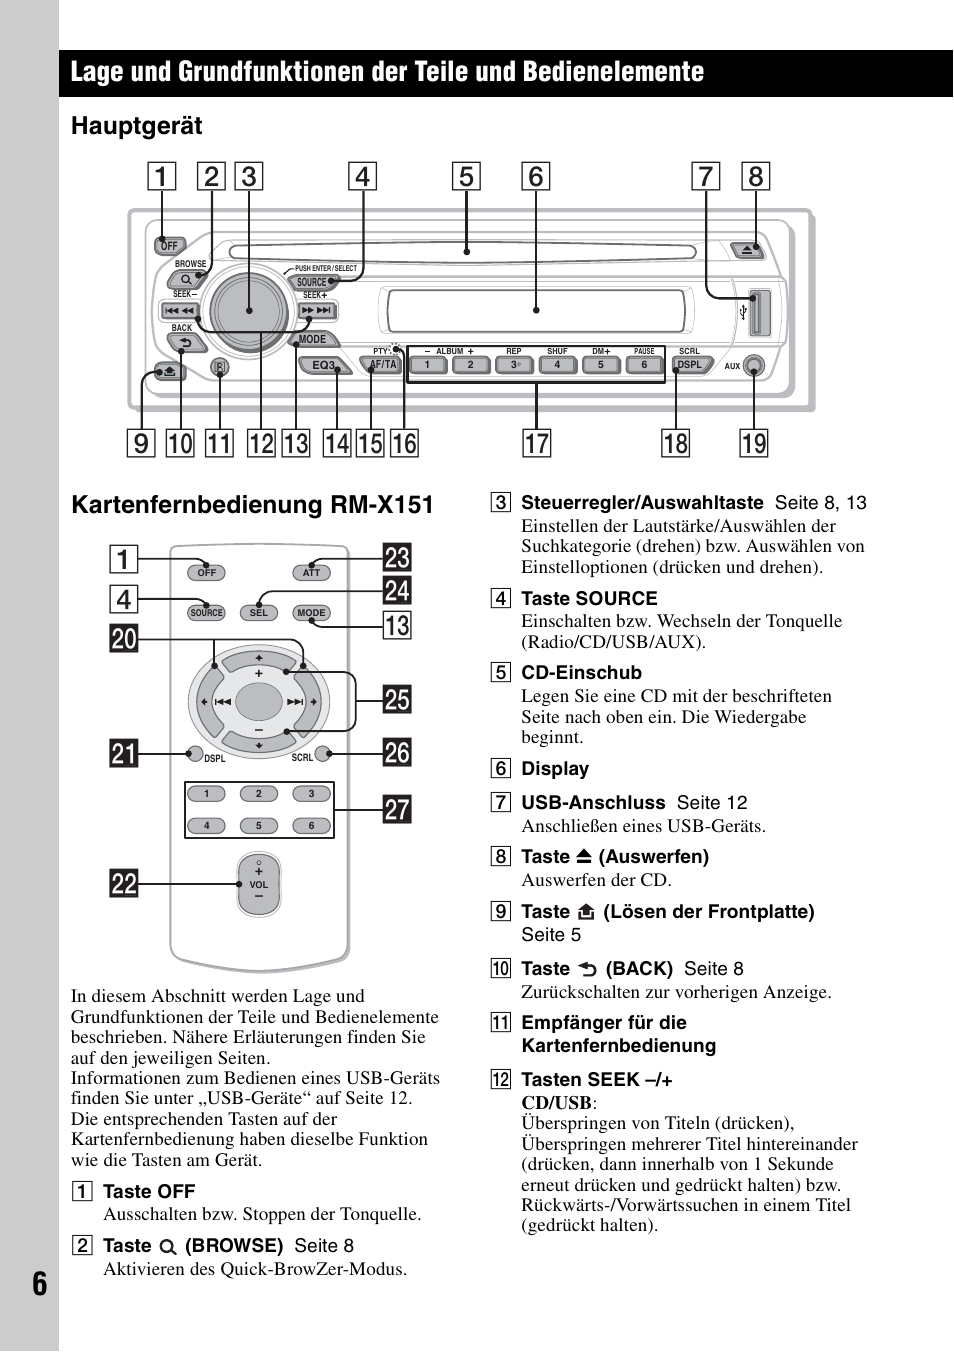 Hauptgerät, Kartenfernbedienung rm-x151, Hauptgerät kartenfernbedienung  rm-x151 | Sony CDX-GT420U User Manual | Page 26 / 112 | Original mode